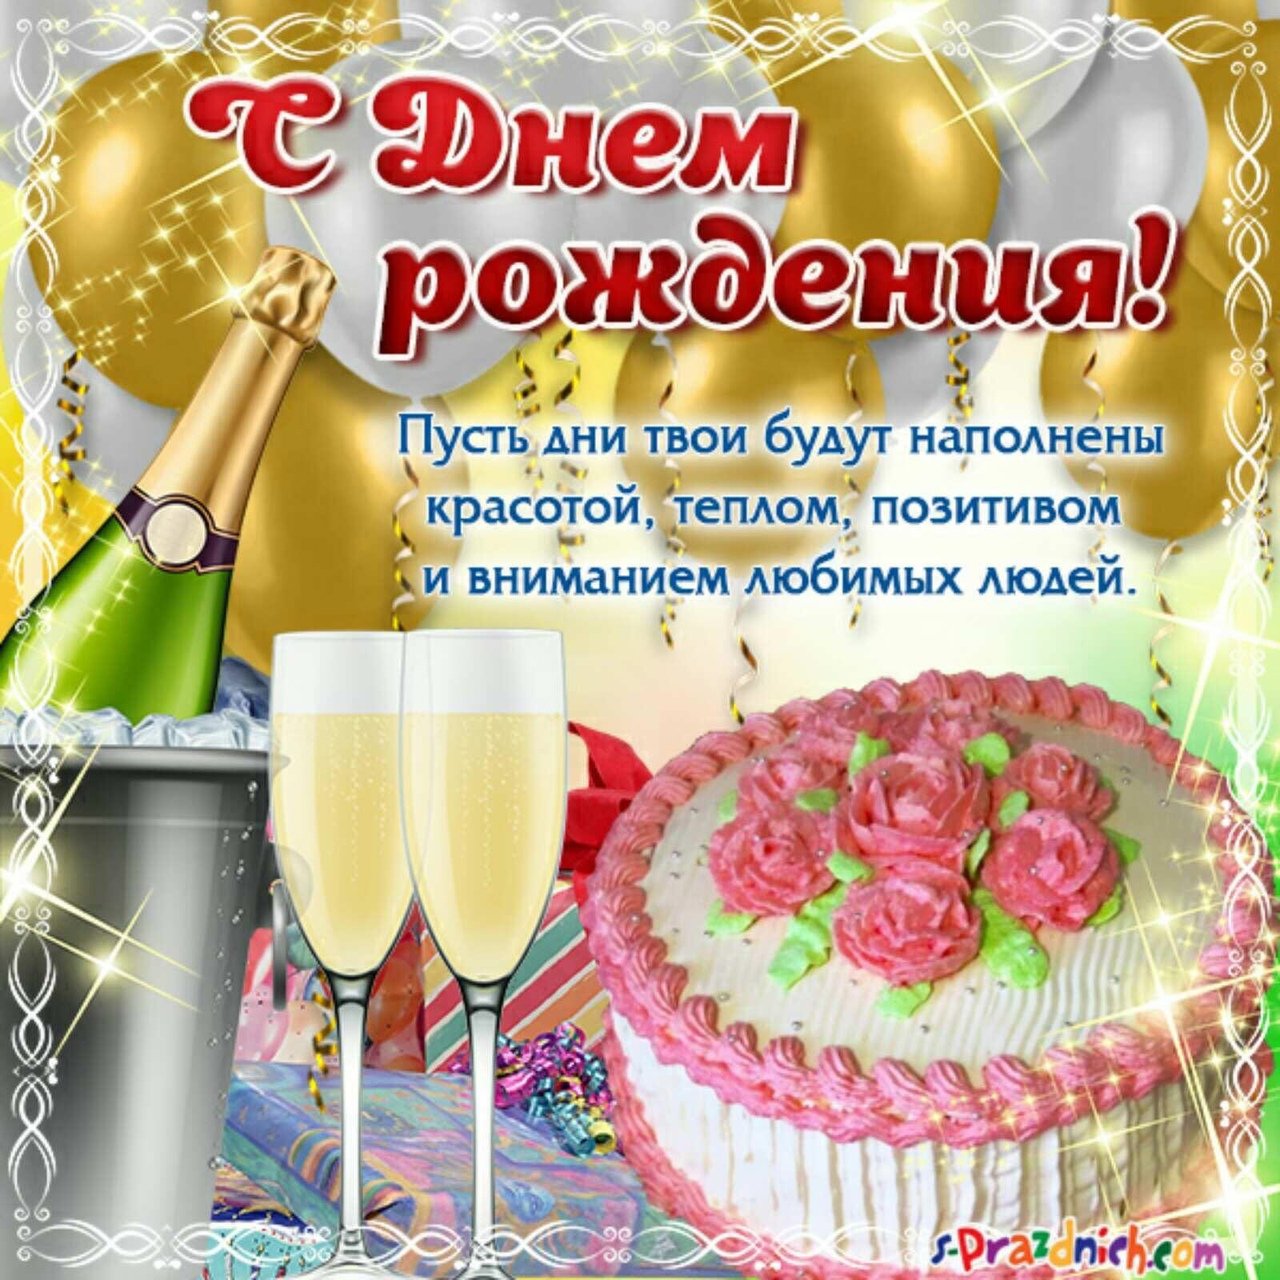 Света с днем рождения картинки поздравления. С днем рождения. Поздравления с днём рождения. Света с днём рождения поздравления. Поздравления с днём рождения с тортом и шампанским.